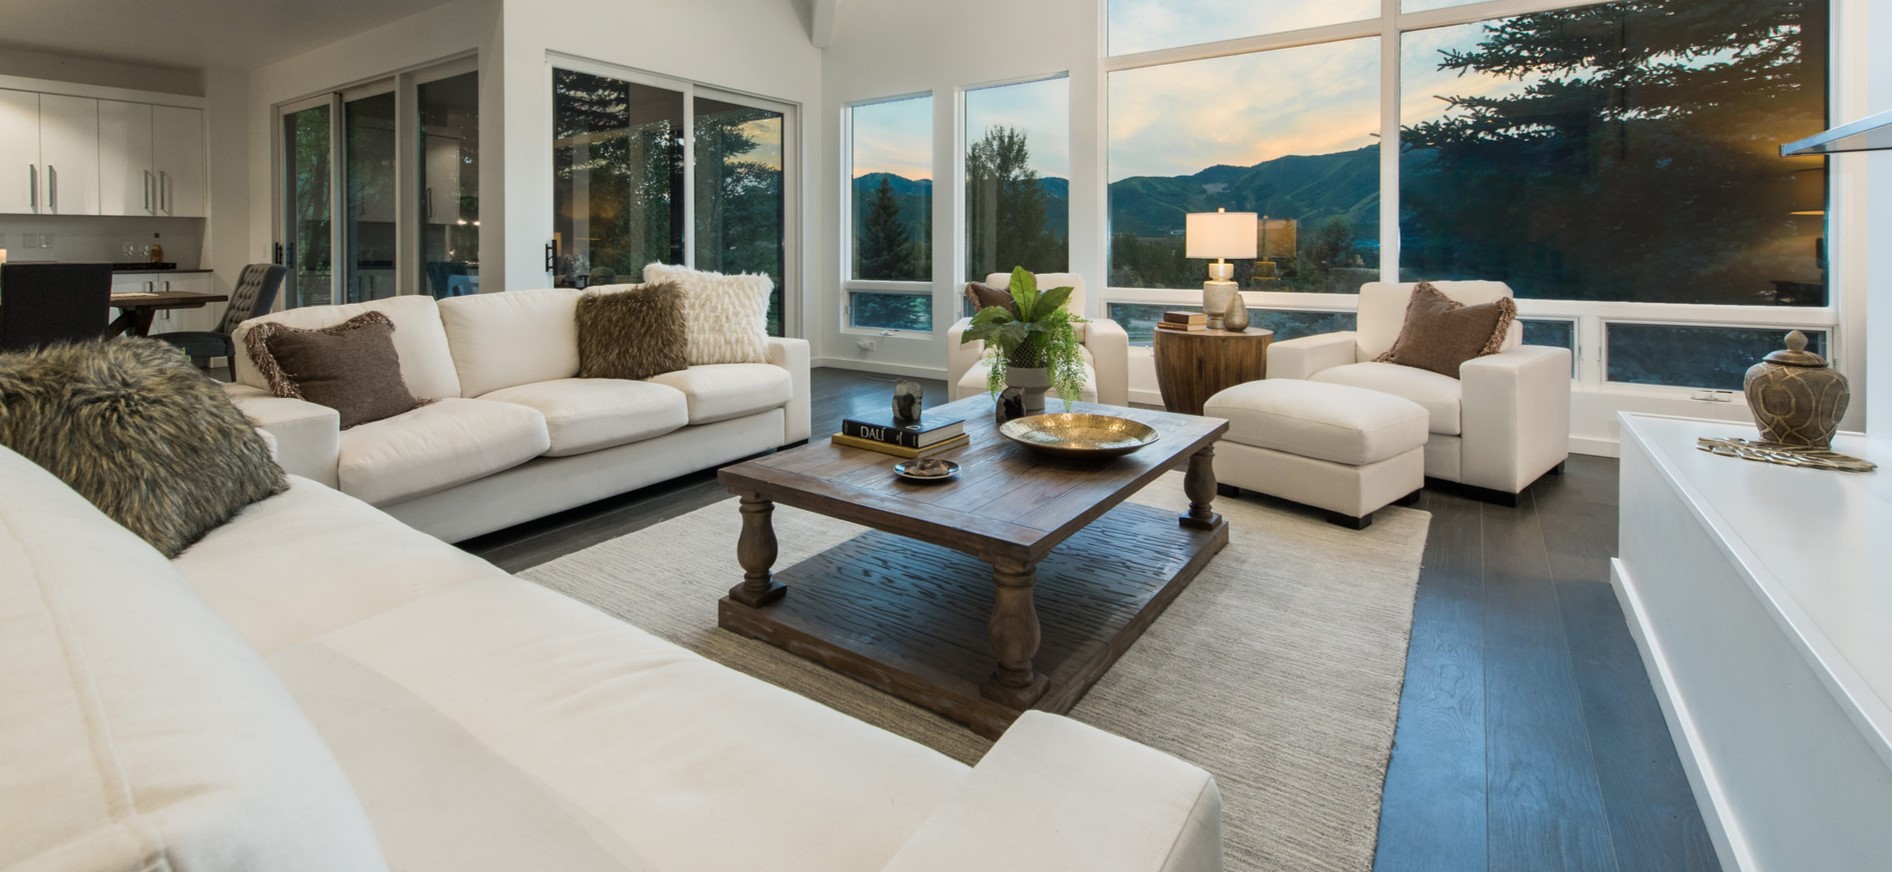 Для большой гостиной можно выбрать несколько белых диванов и удобное кресло